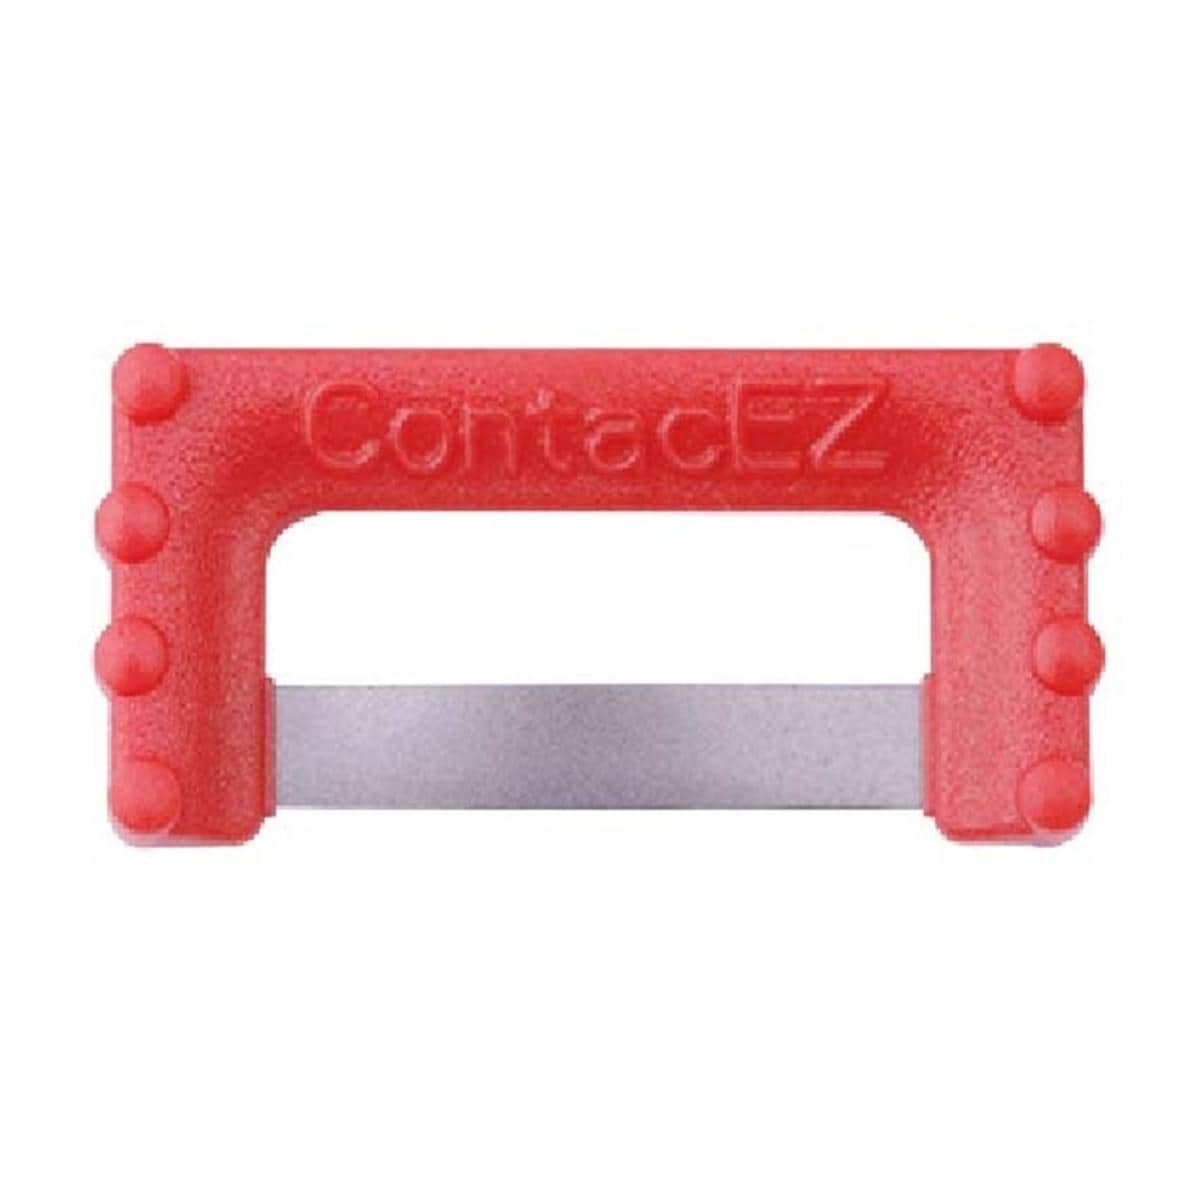 ContacEZ IPR - recharge - REF. 32416 - rouge 0,012mm, 16 pcs